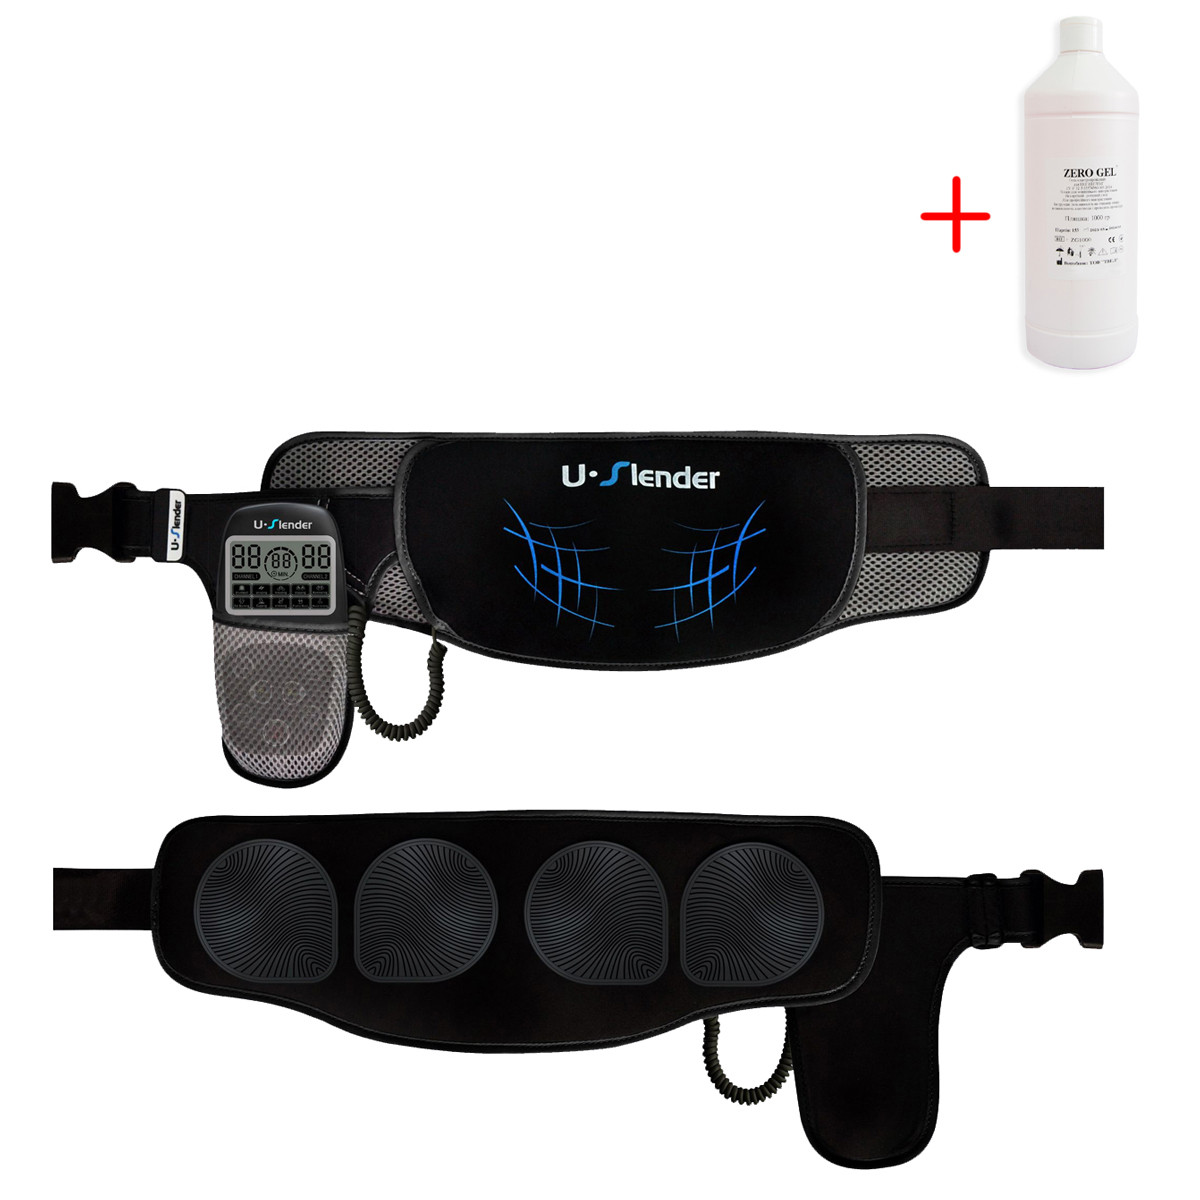 Міостимулятор для преса U-Slender тренажер для преса + Гель Zero gel (1 л) струмопровідний для ЕКГ